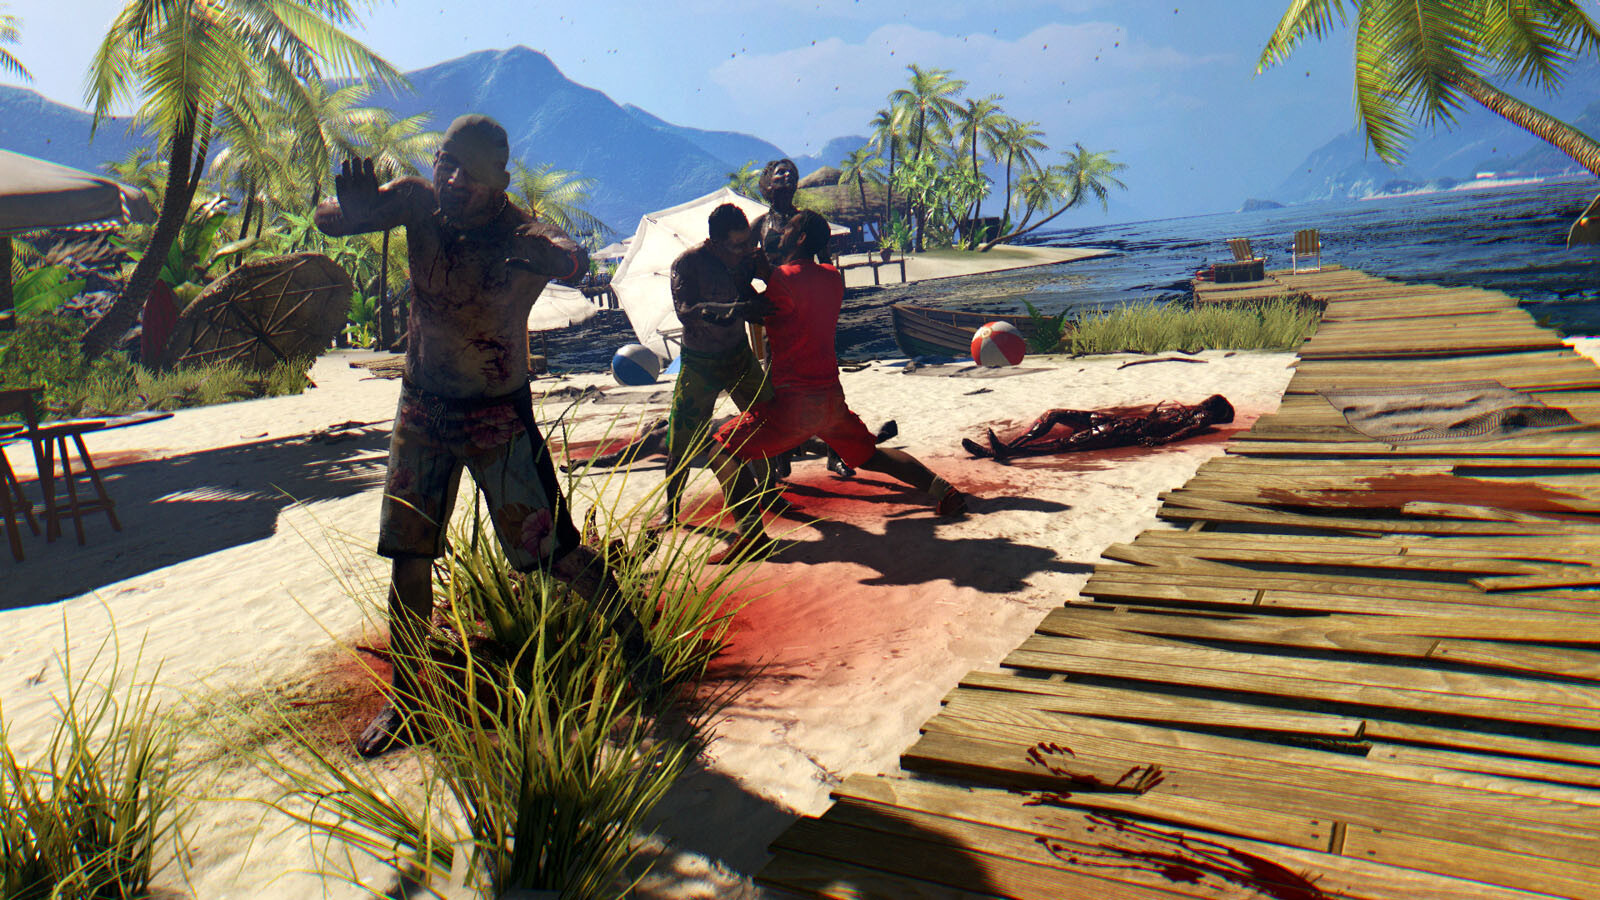 Dead Island: Riptide Definitive Edition, PC Steam Game